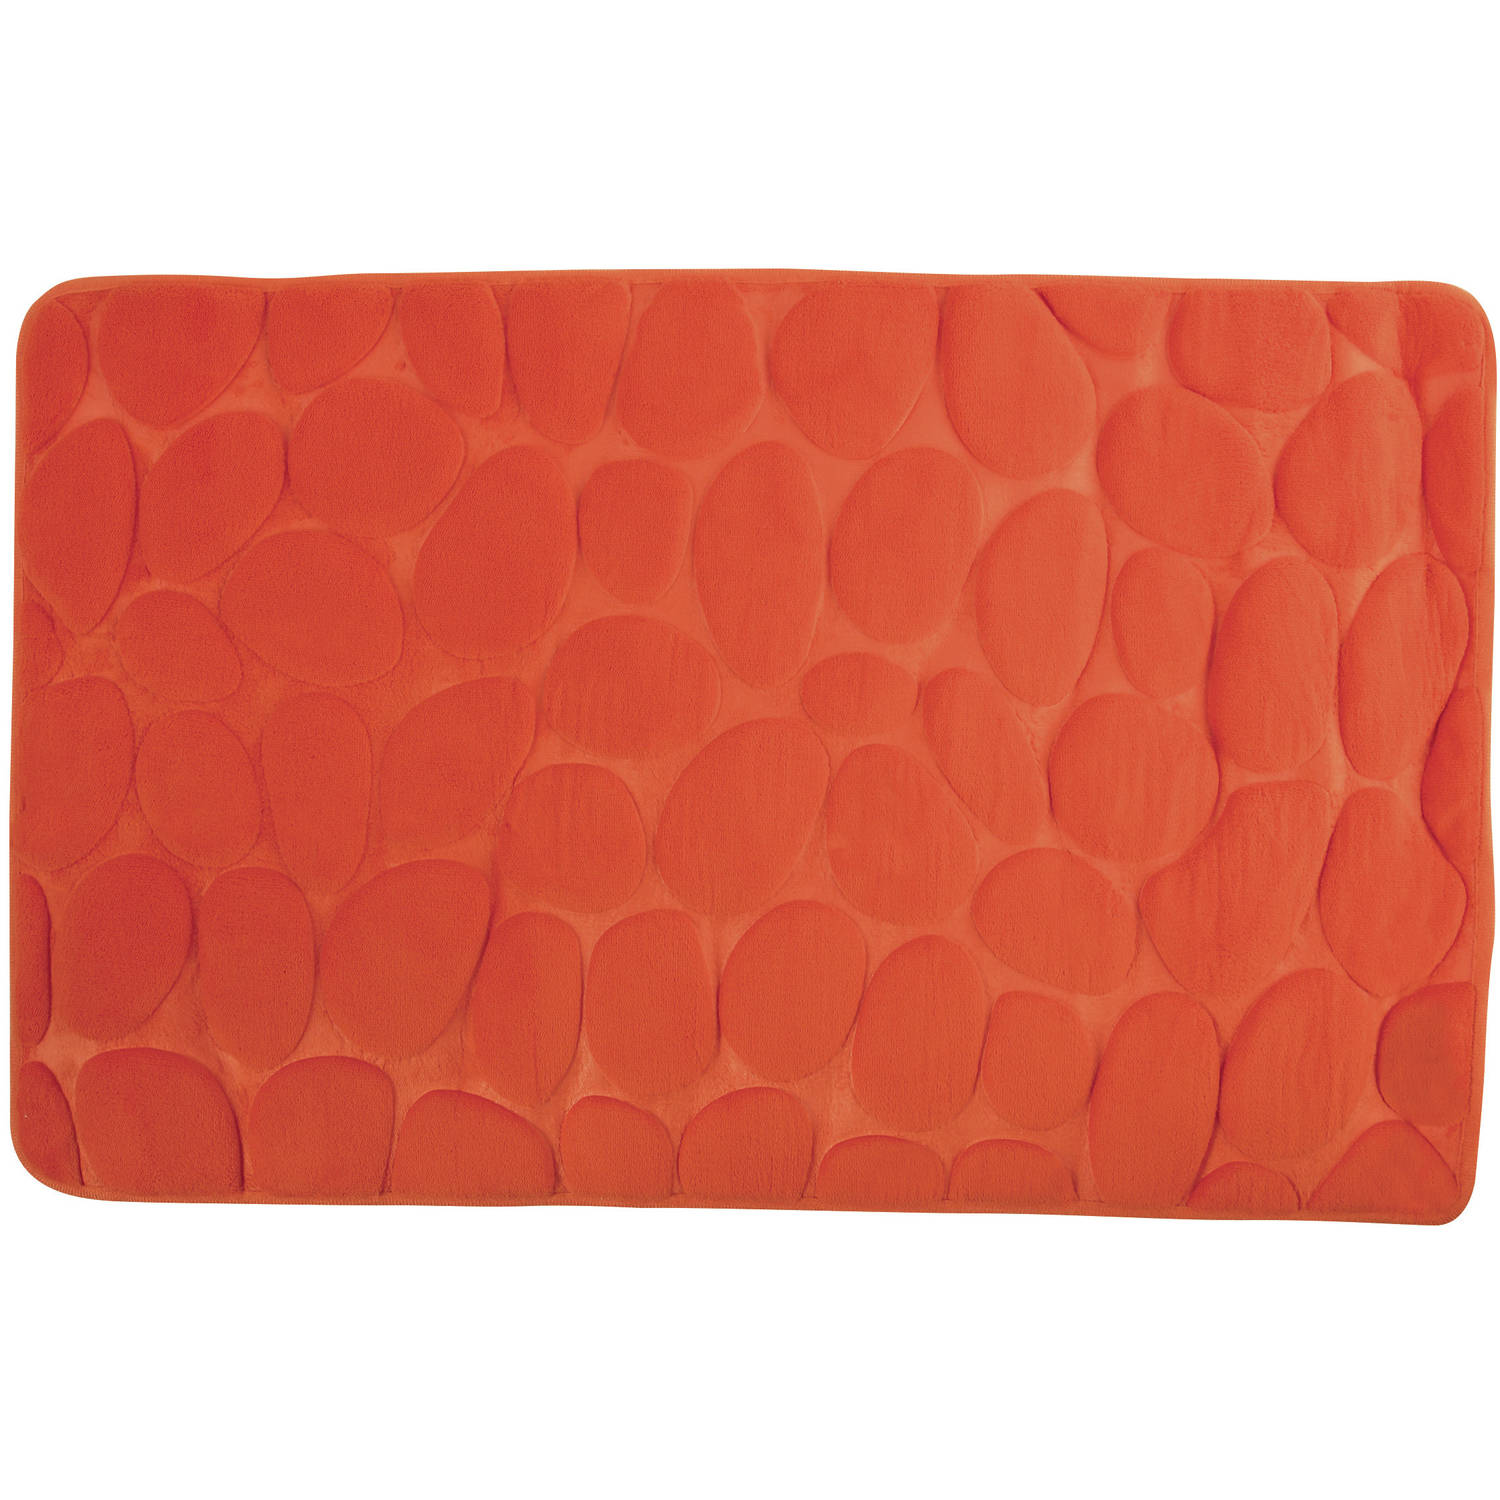 Badkamerkleedje-badmat tapijt kiezel motief vloermat oranje 50 x 80 cm laagpolig Badmatjes